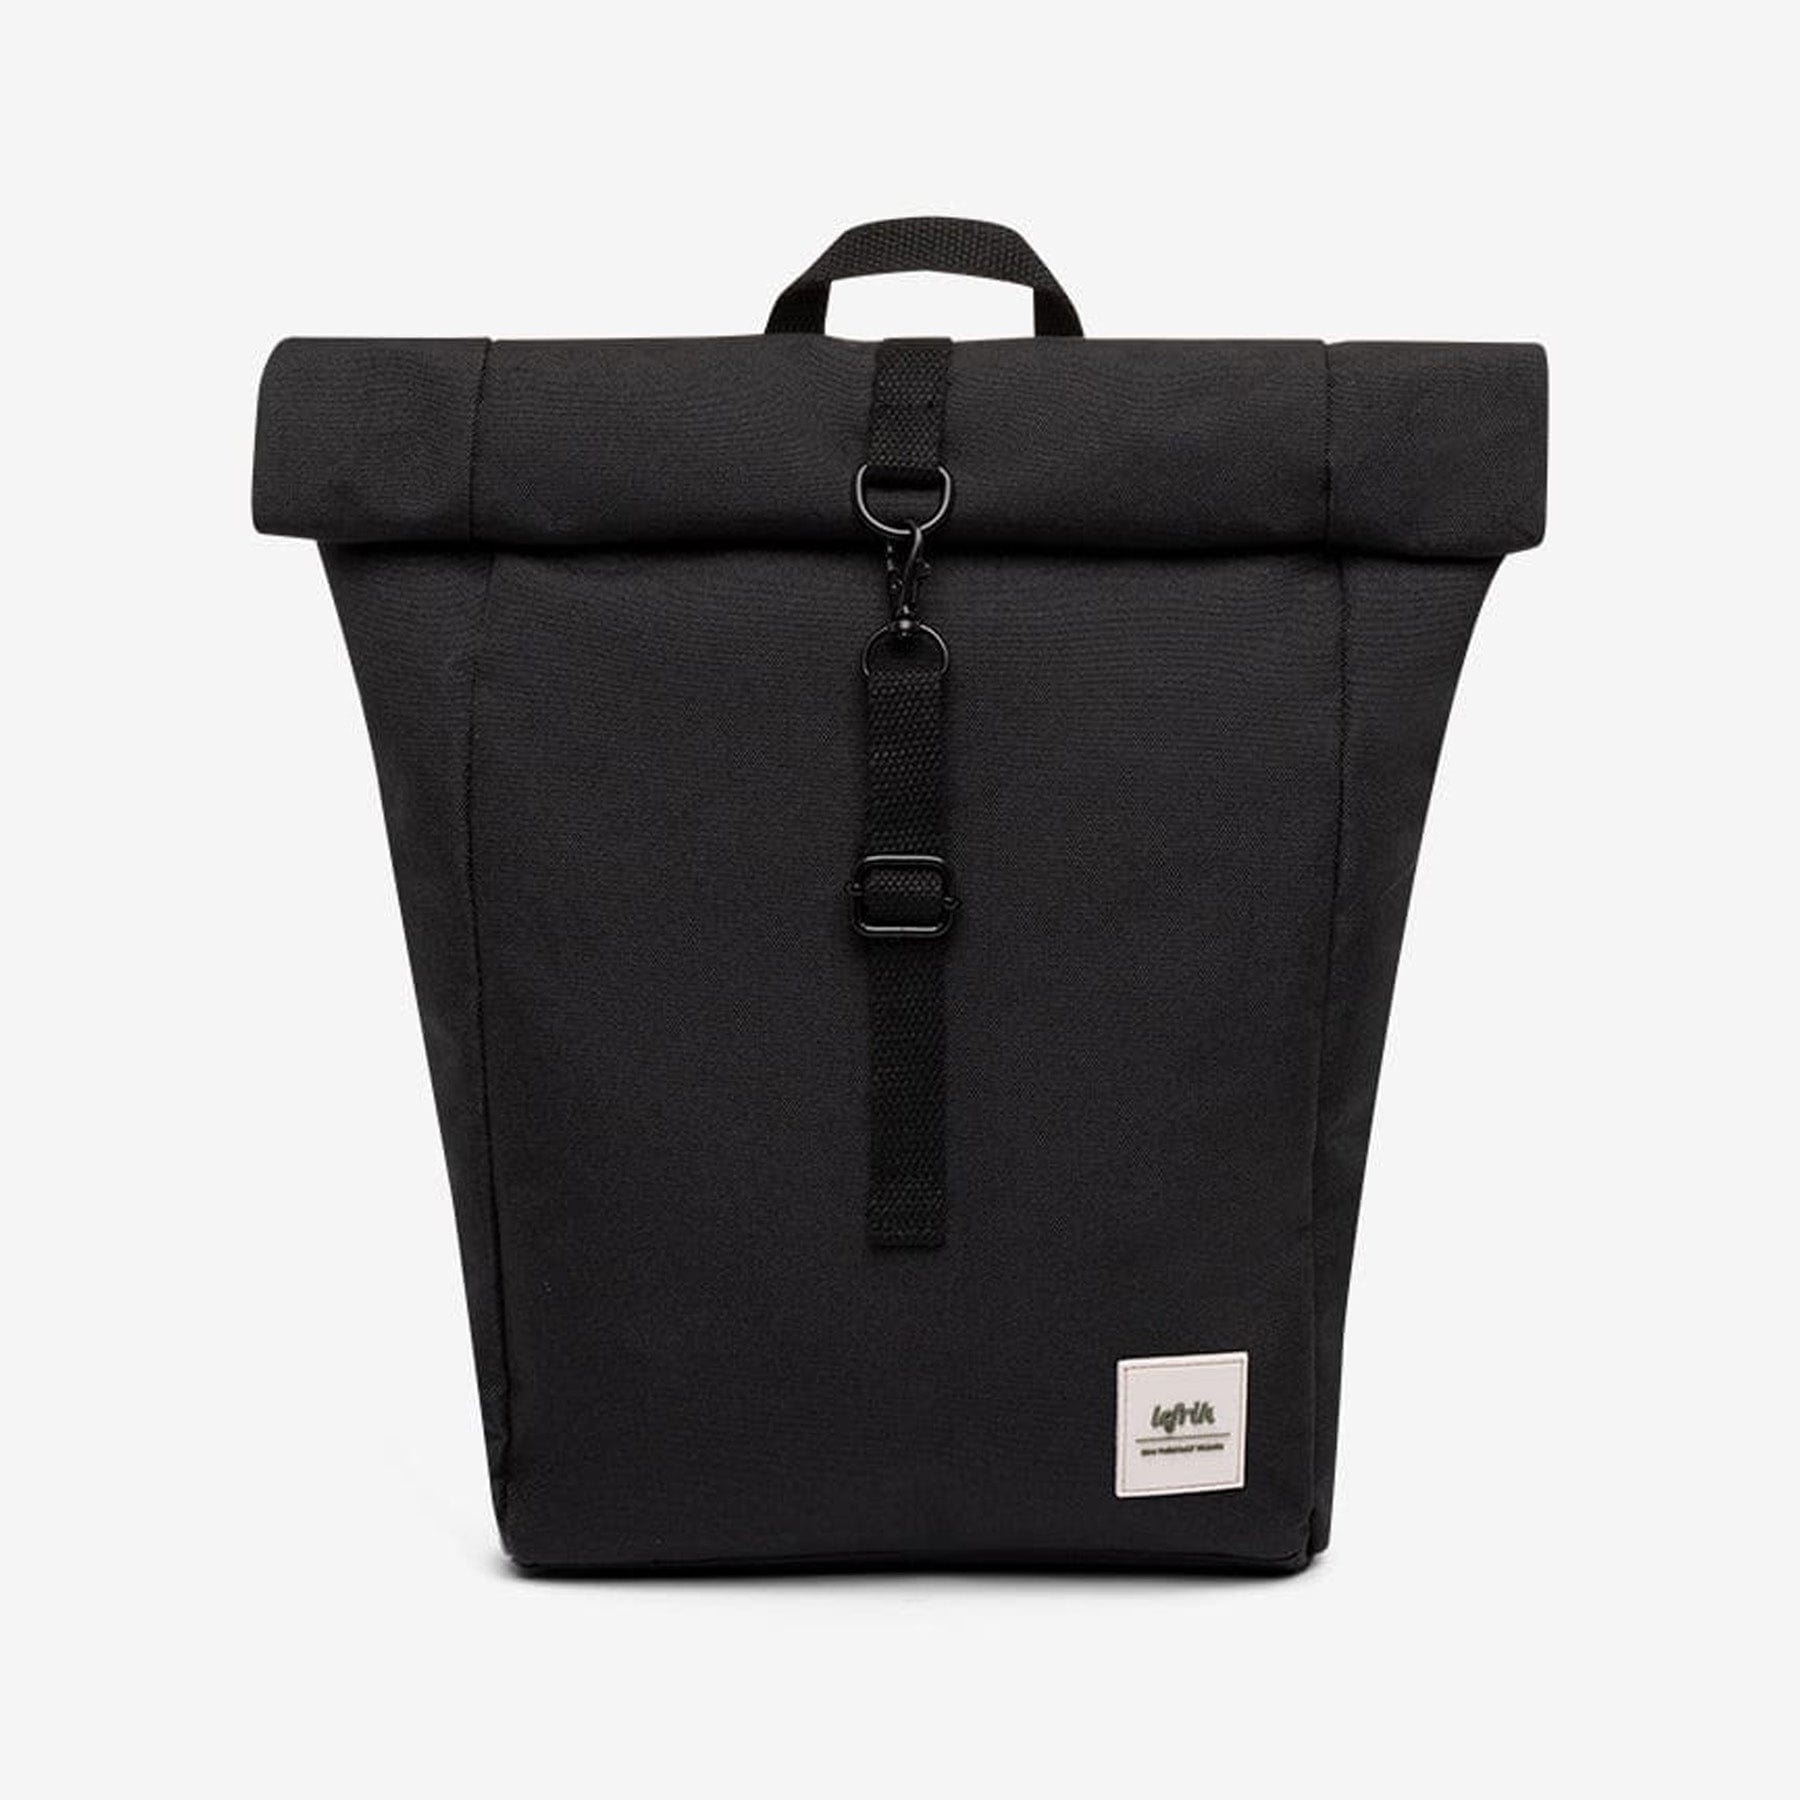 Roll top mini backpack black